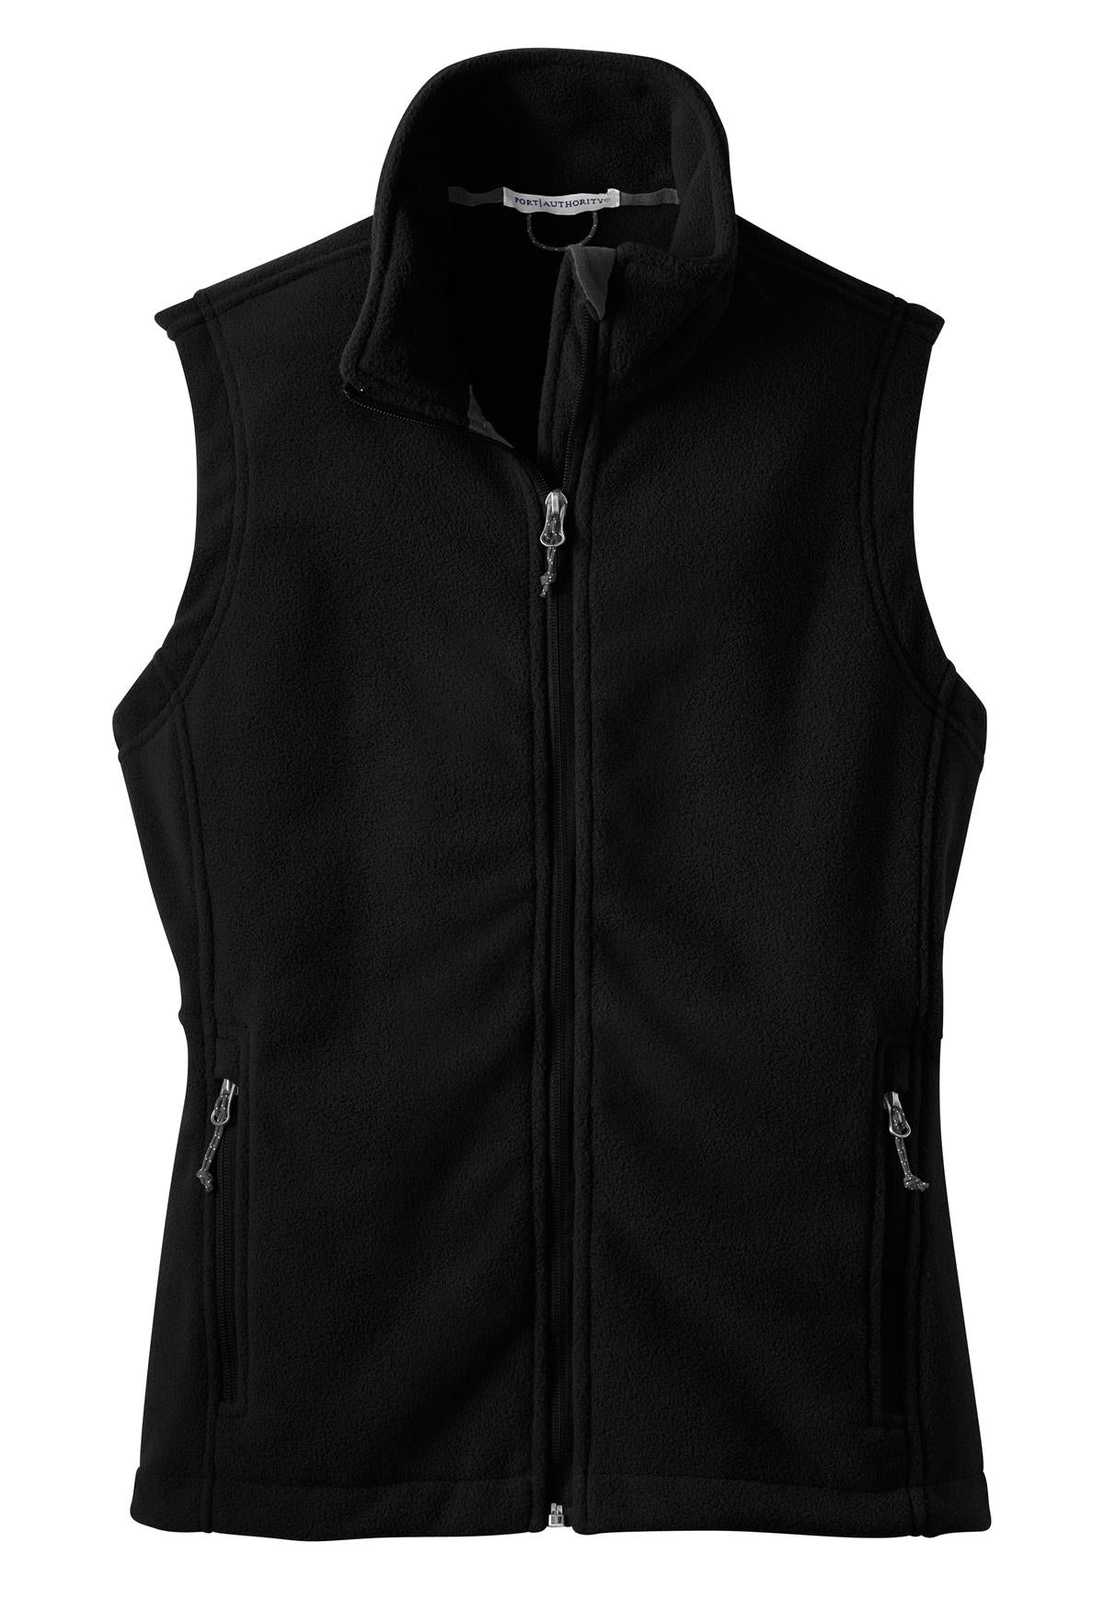 Port Authority L219 Ladies Value Fleece Vest - Black - HIT a Double - 5